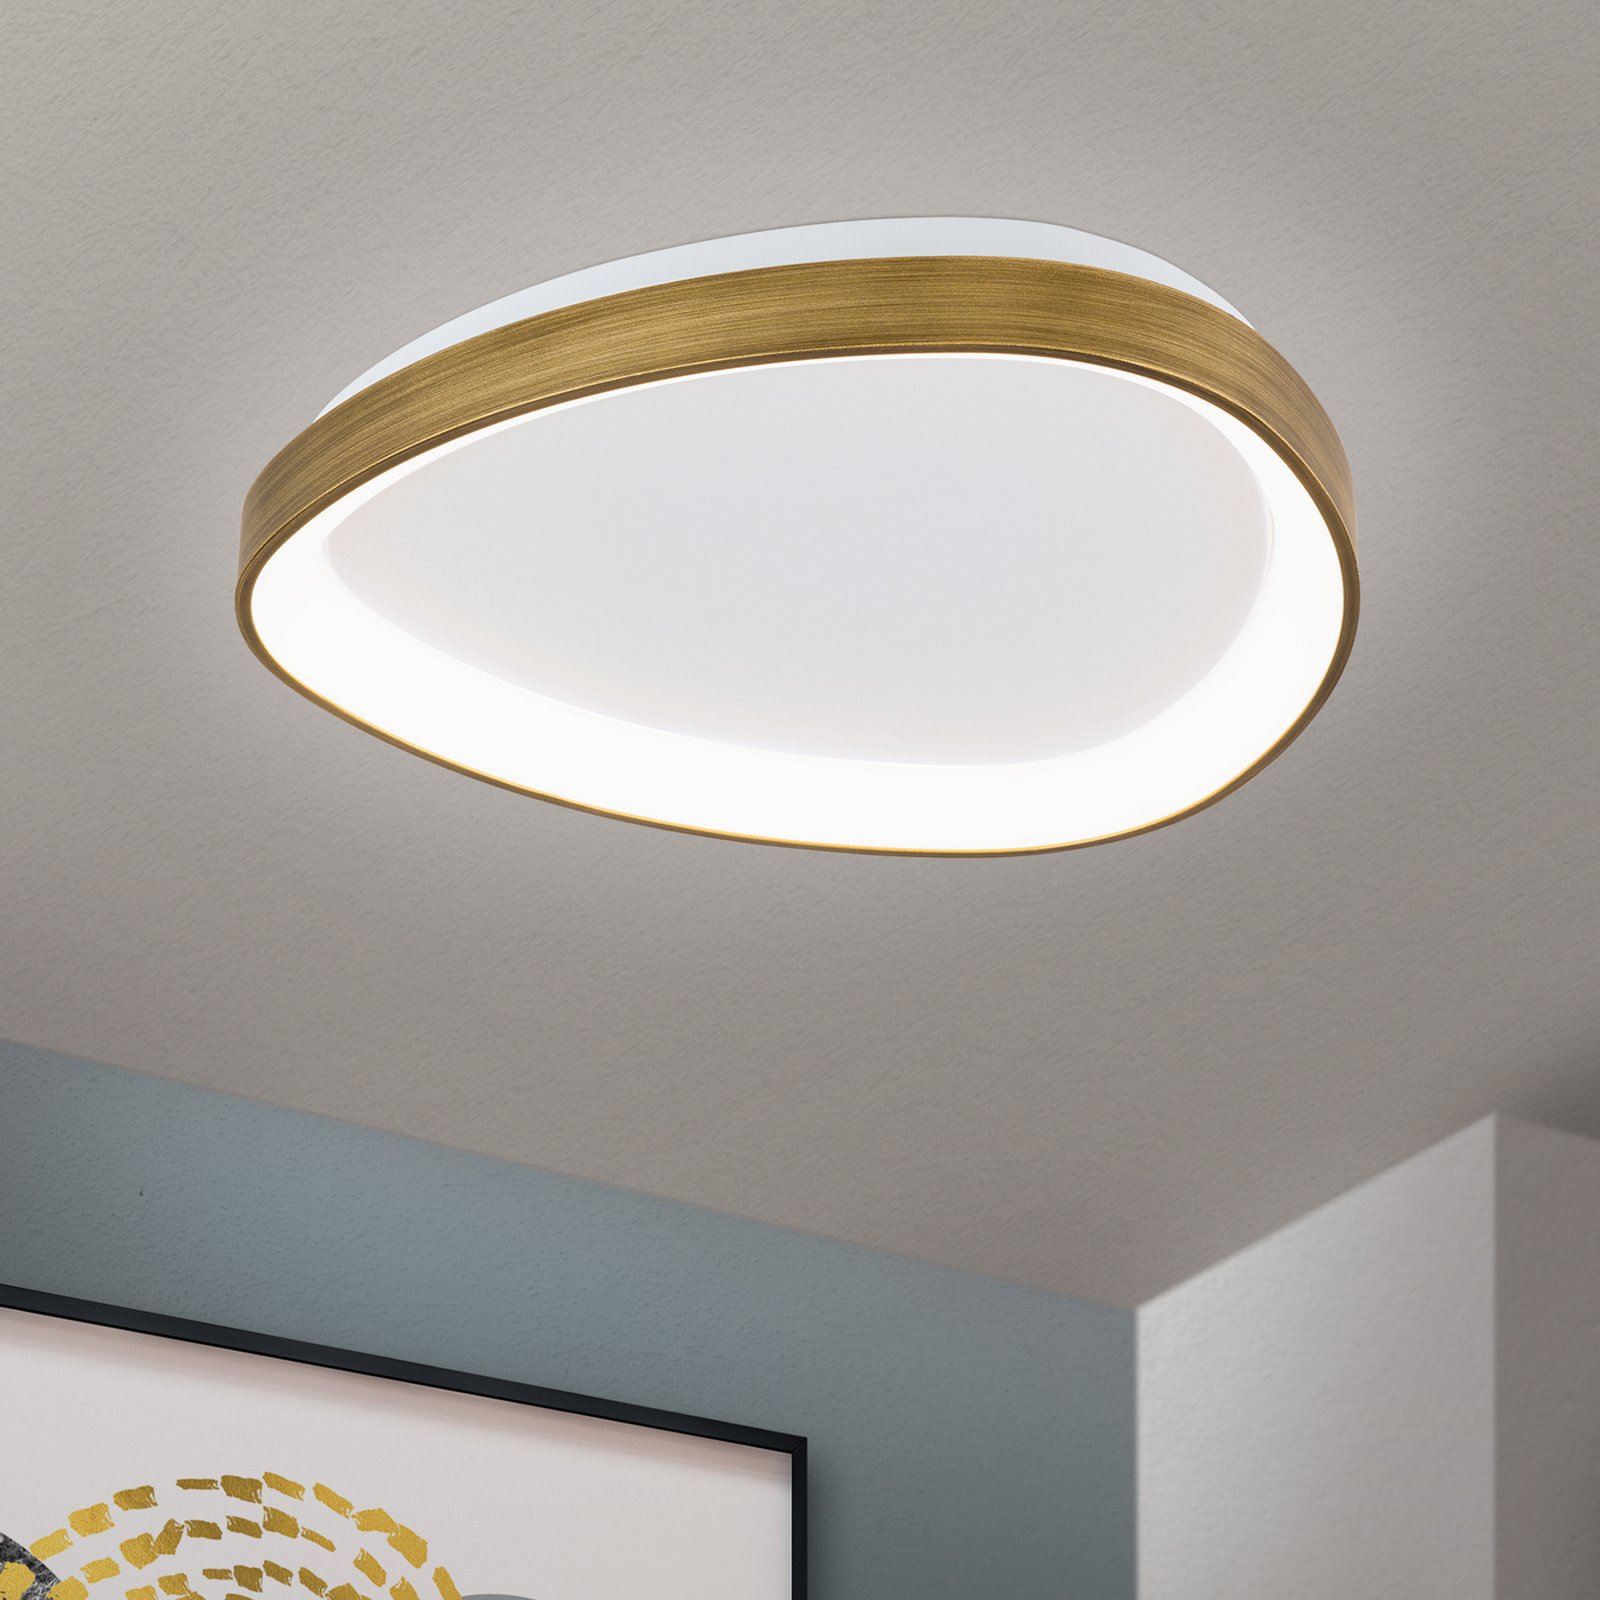 LED ceiling light Charlie, 3,000 K, Ø 45 cm